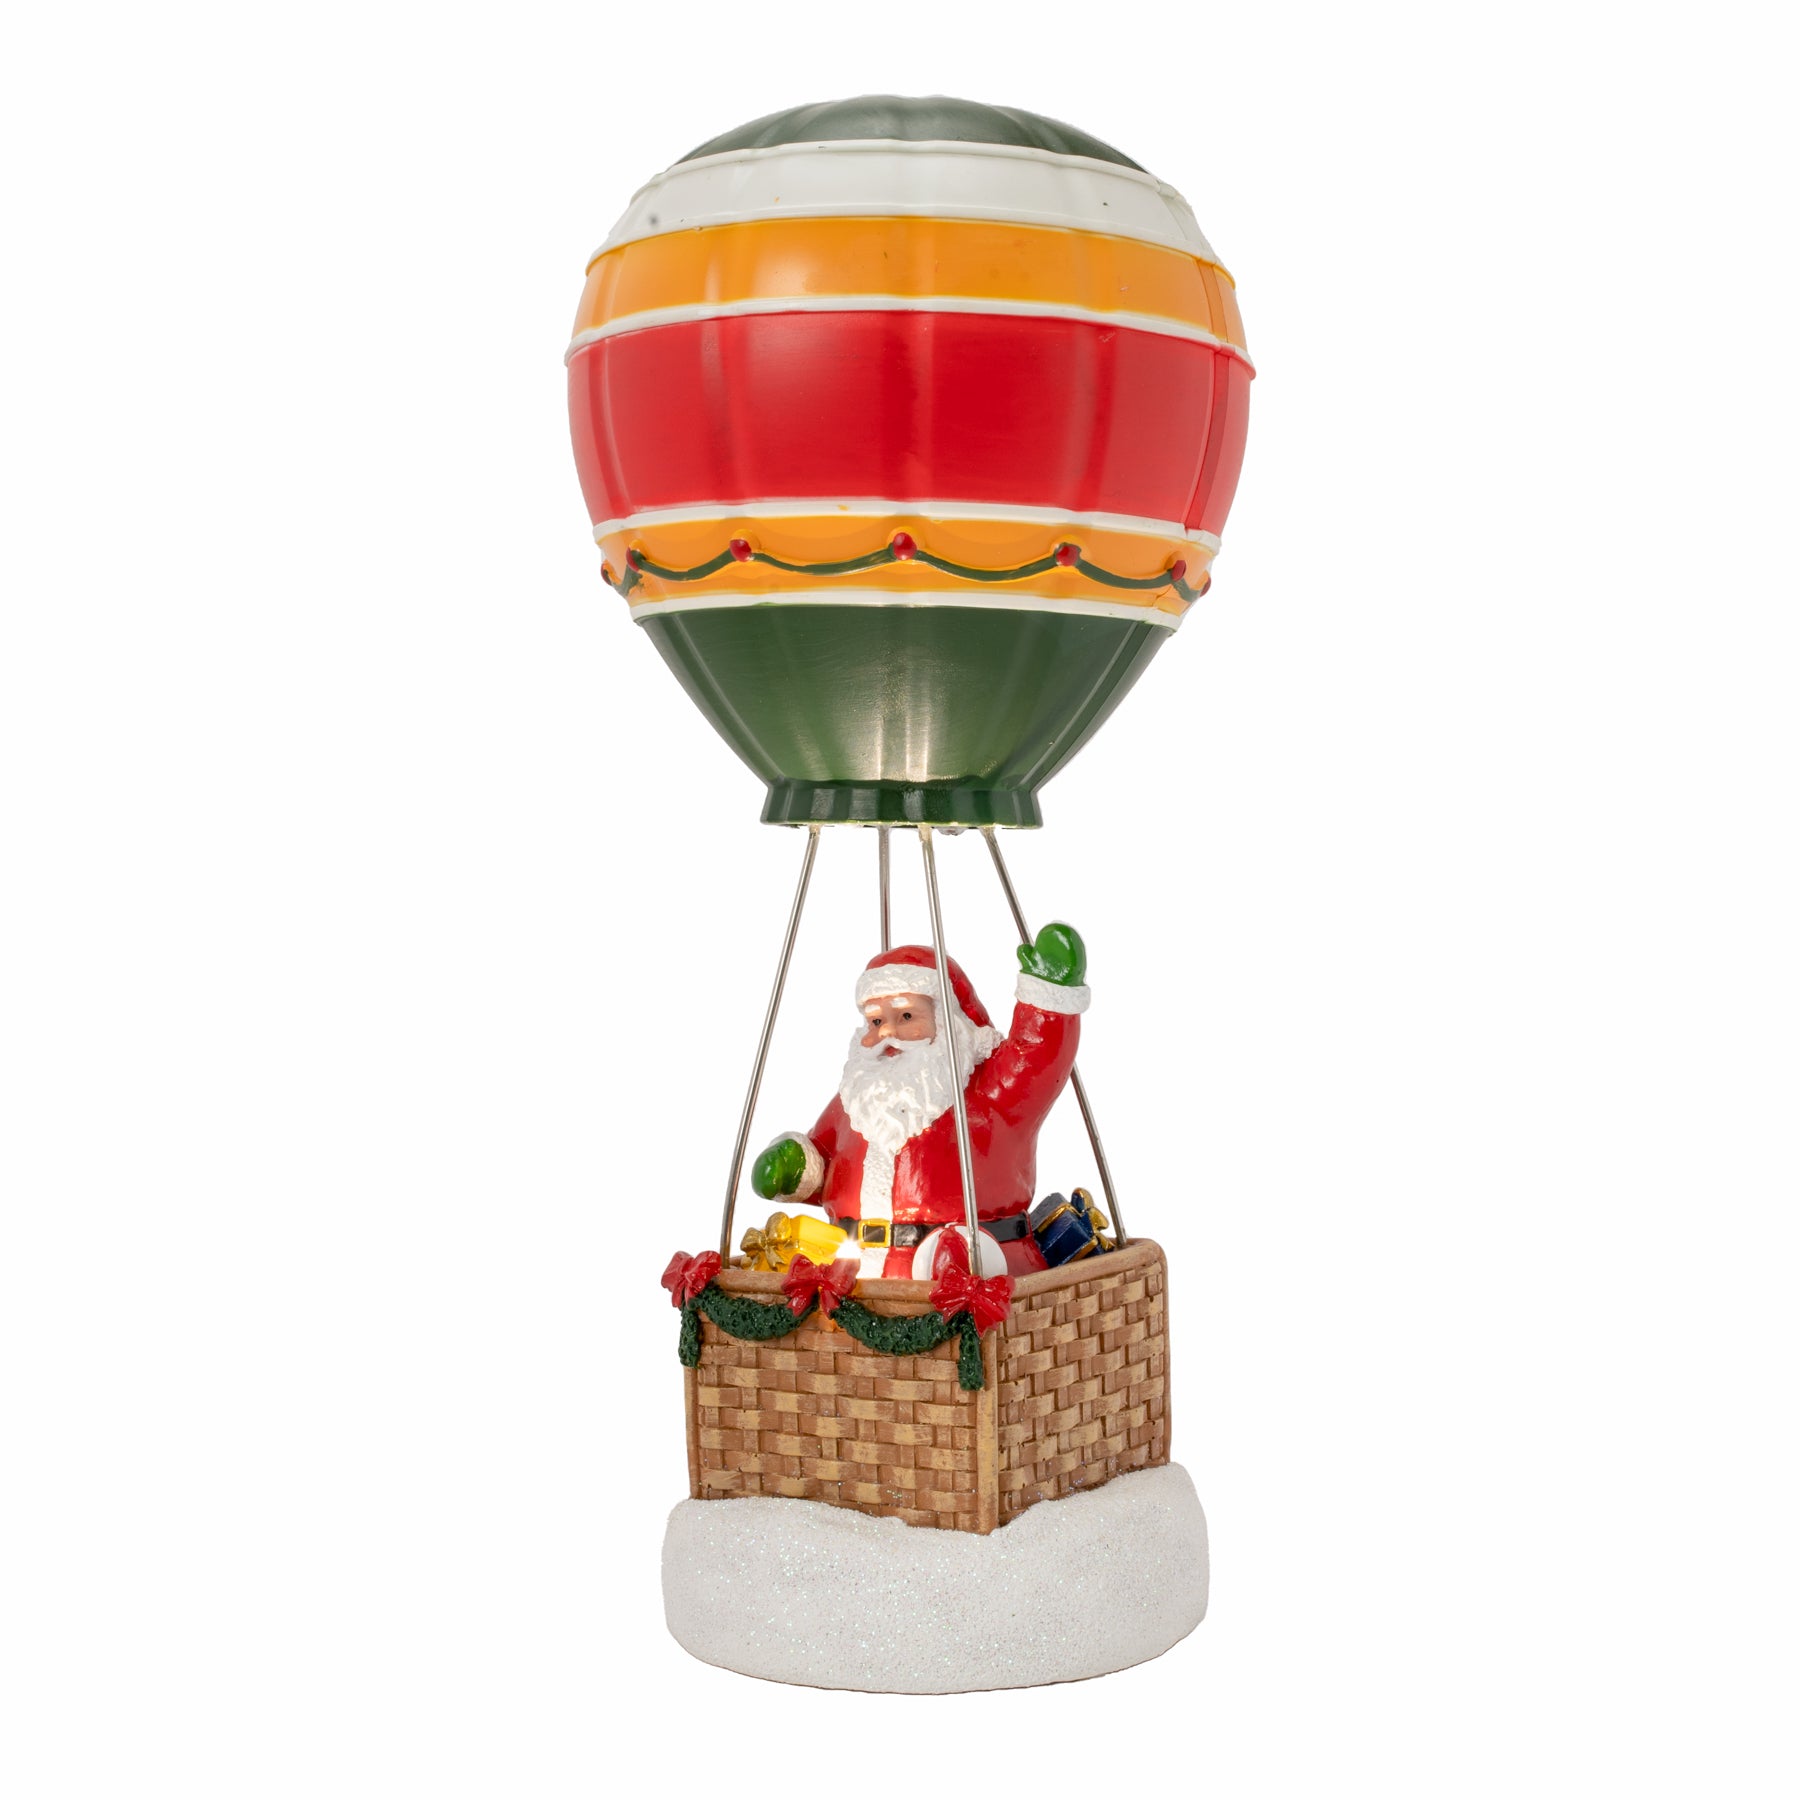 Santa's Hot-Air Balloon